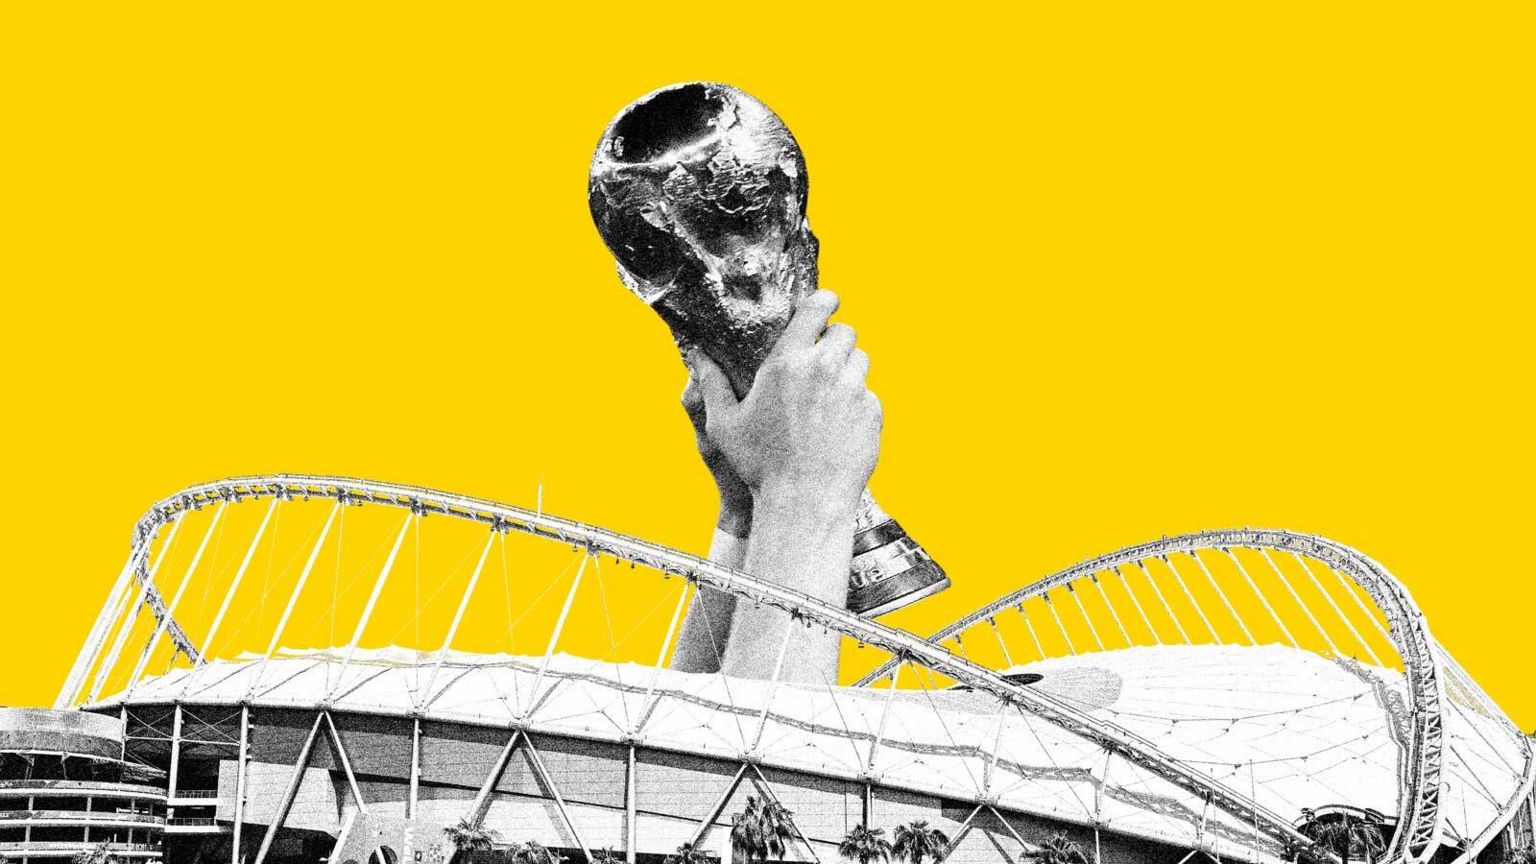 Кубок мира держится над стадионом на этом составном изображении на фоне ярко-желтого цвета